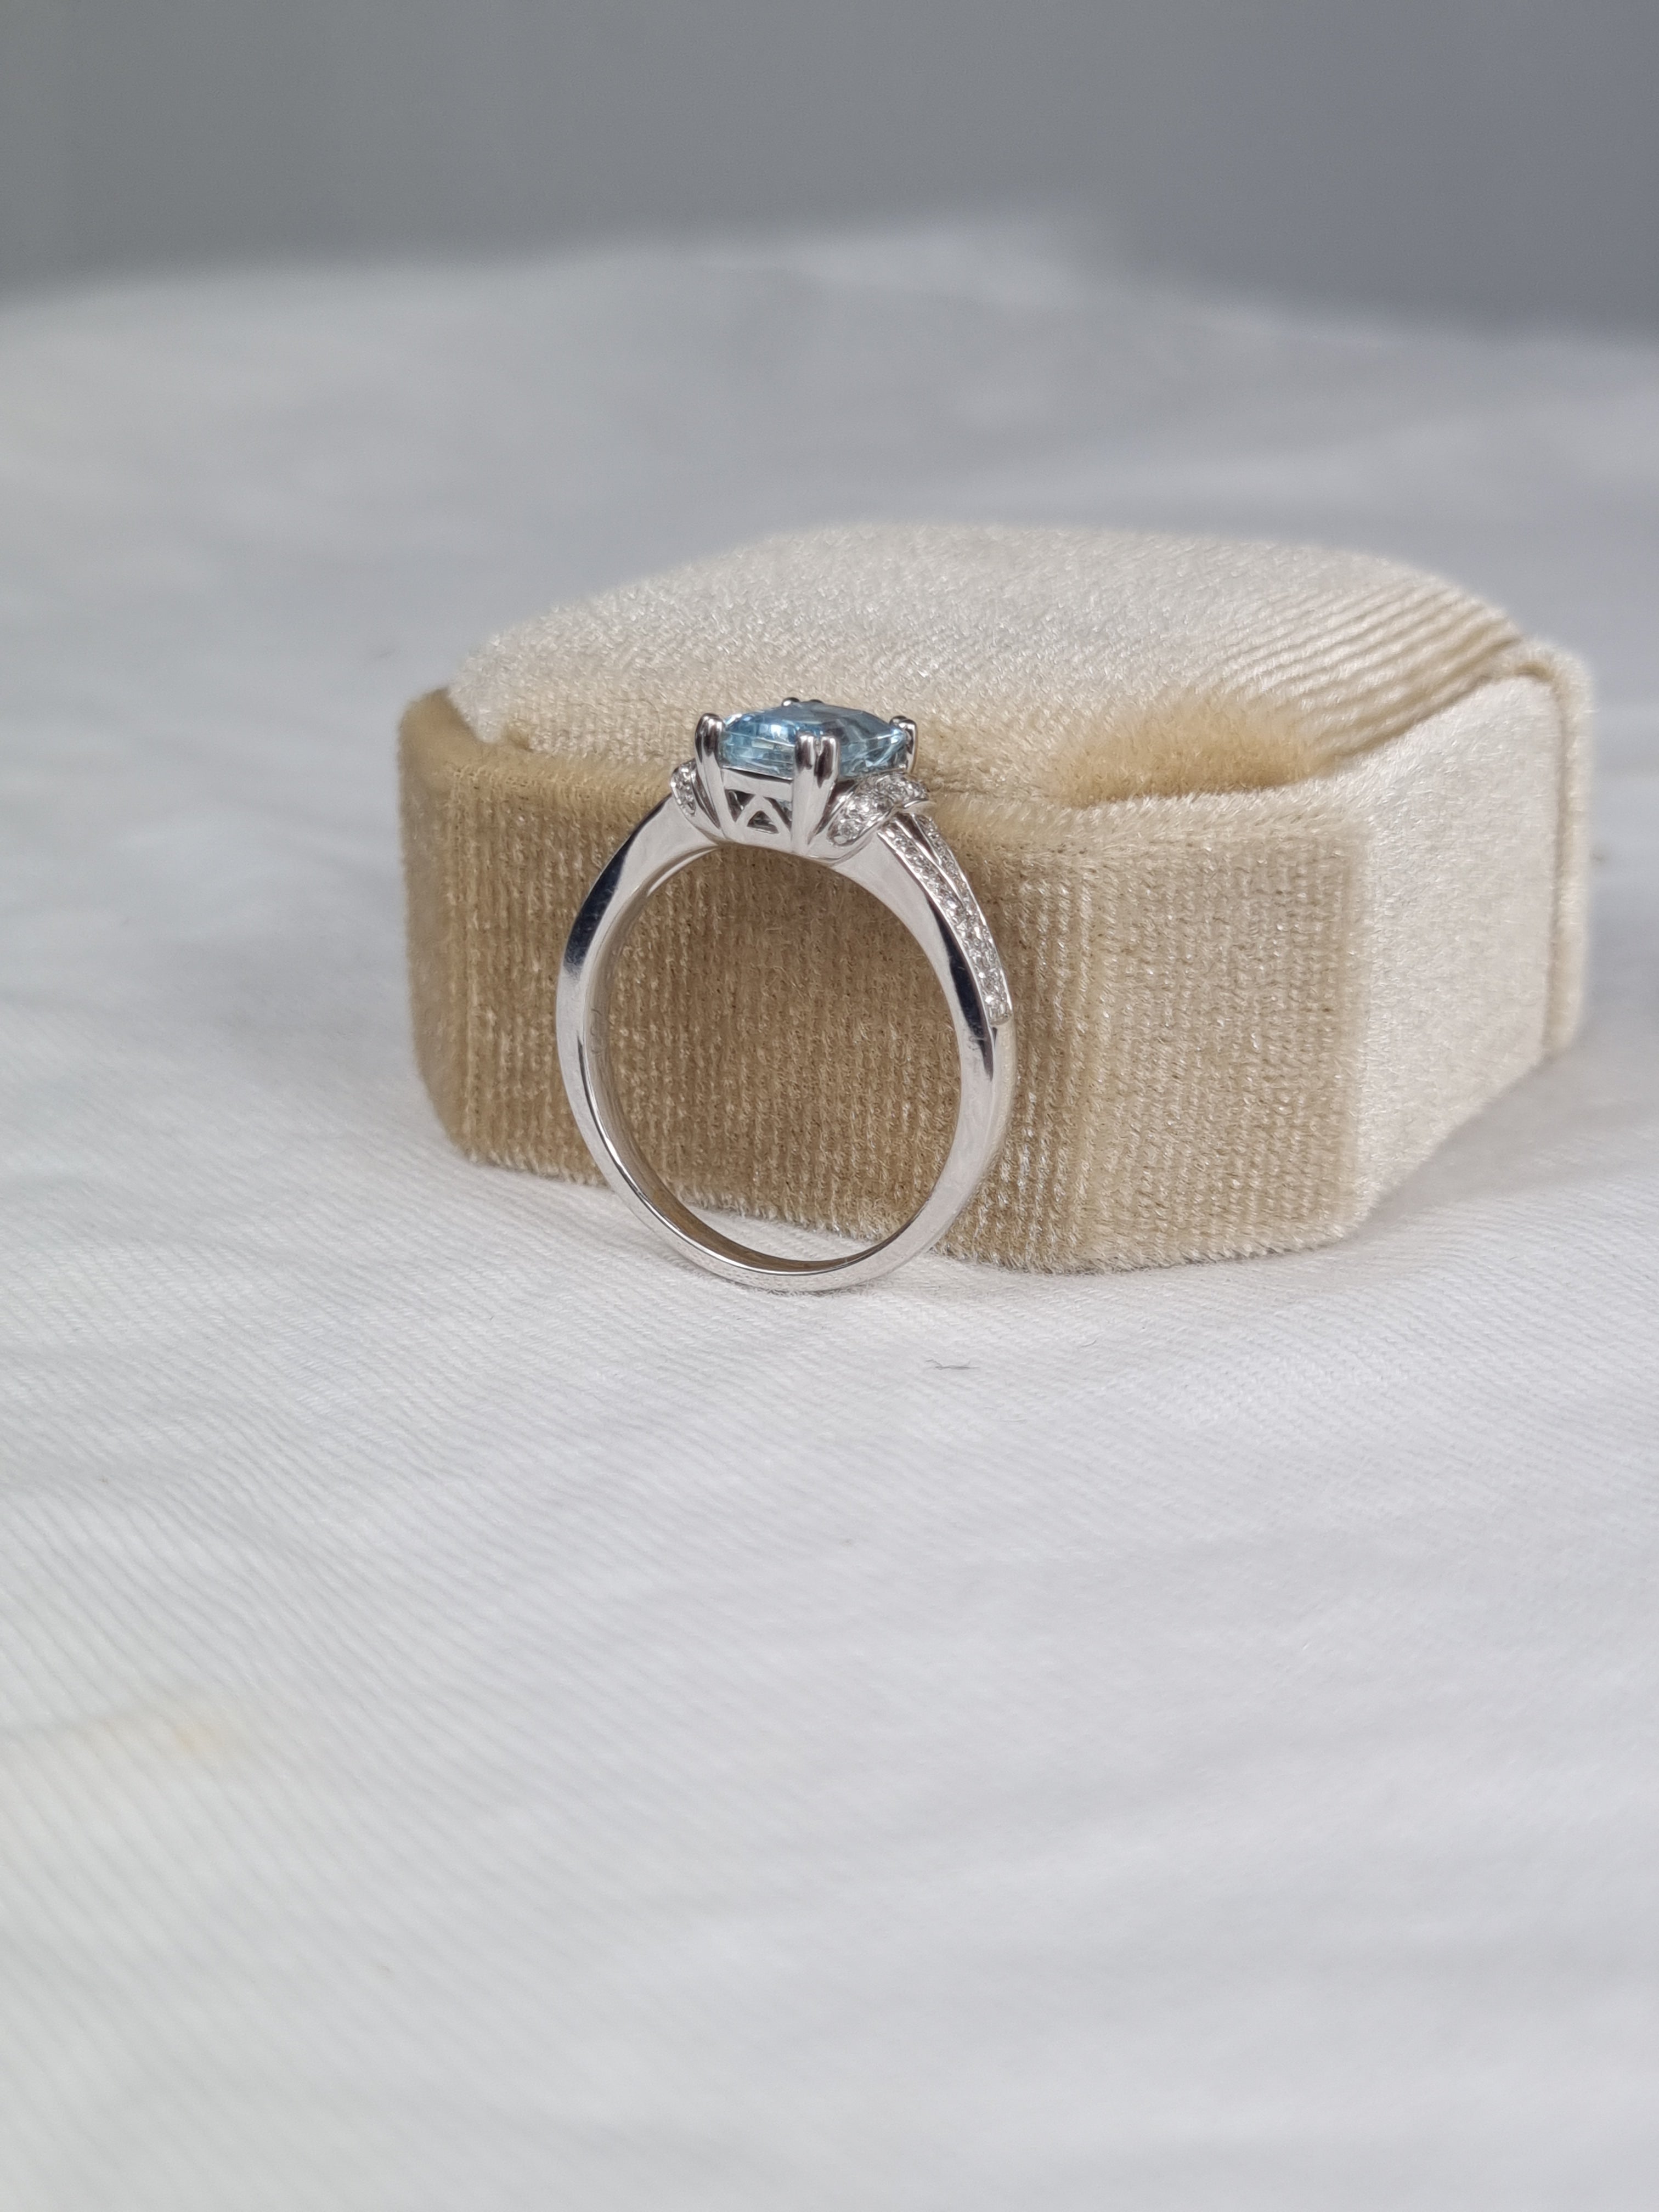 18ct White Gold Aquamarine and Diamond ring